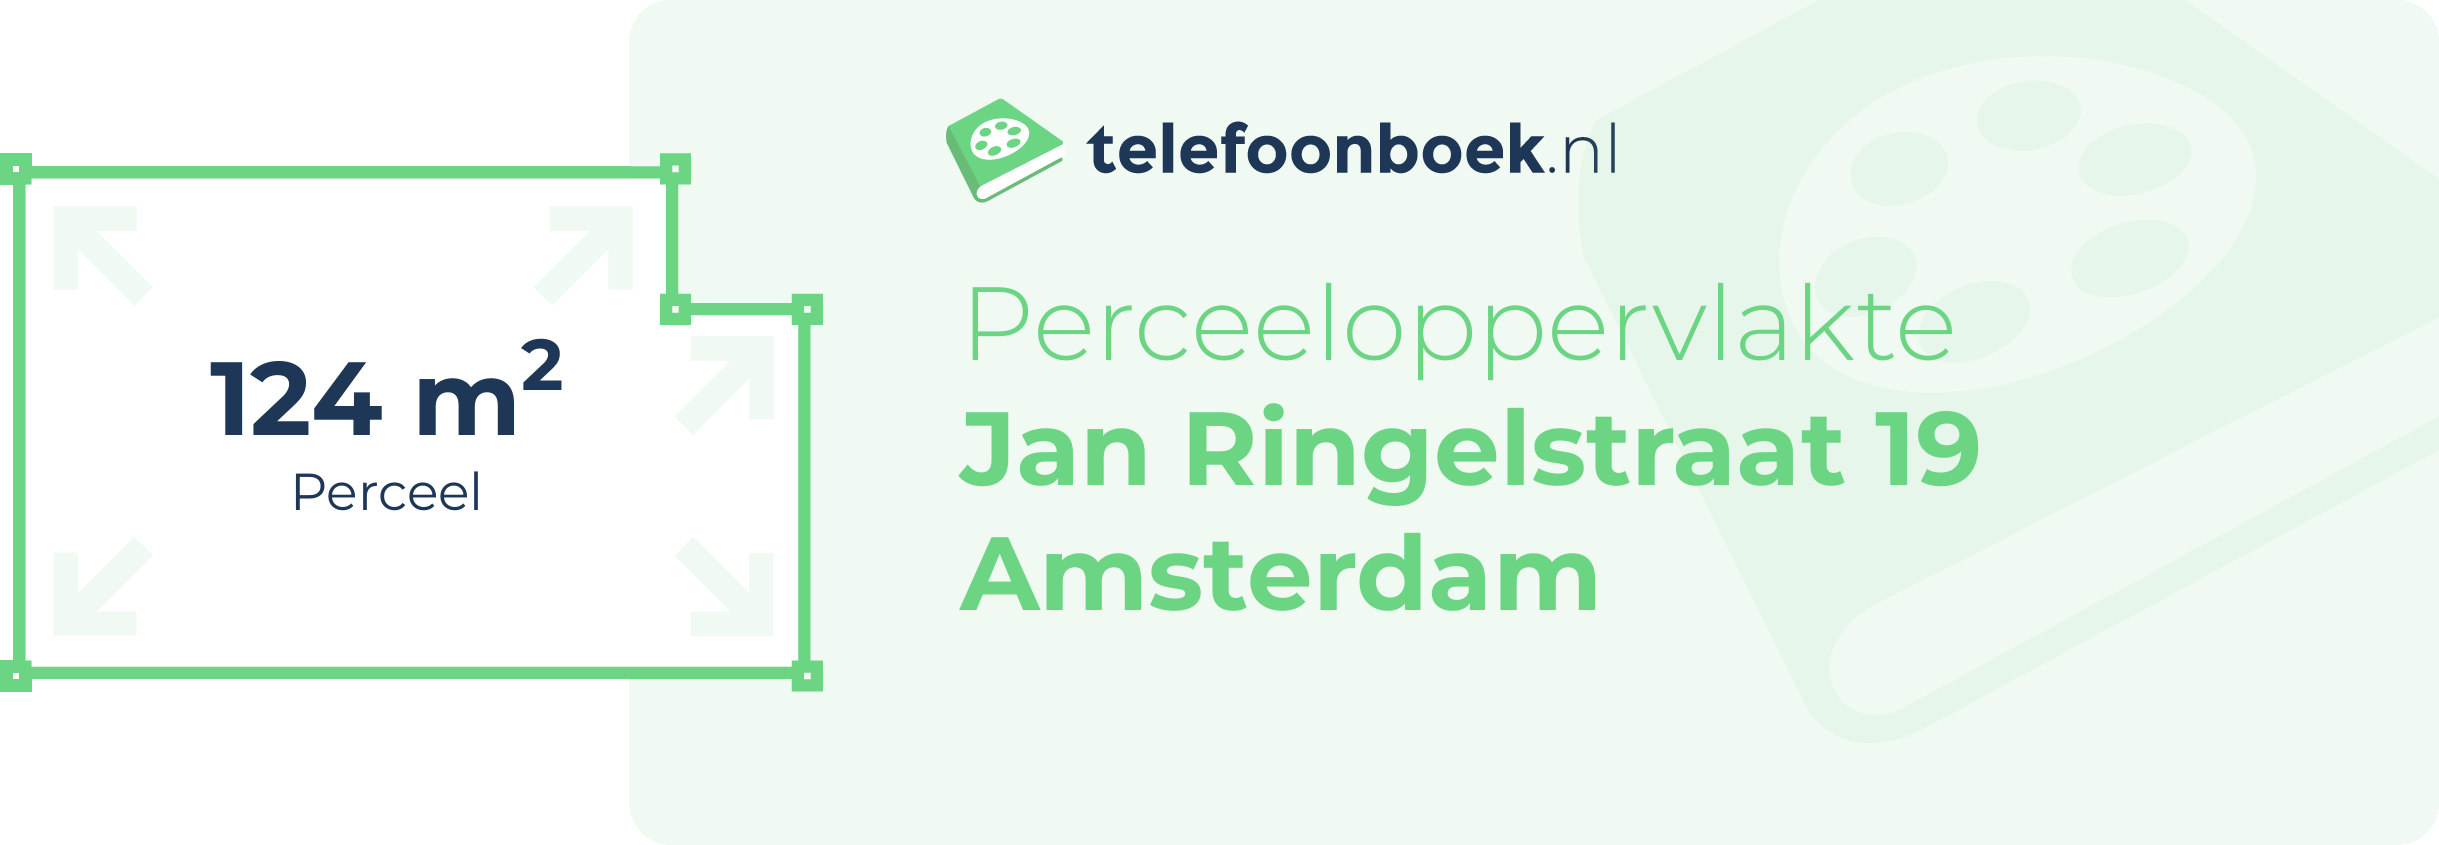 Perceeloppervlakte Jan Ringelstraat 19 Amsterdam